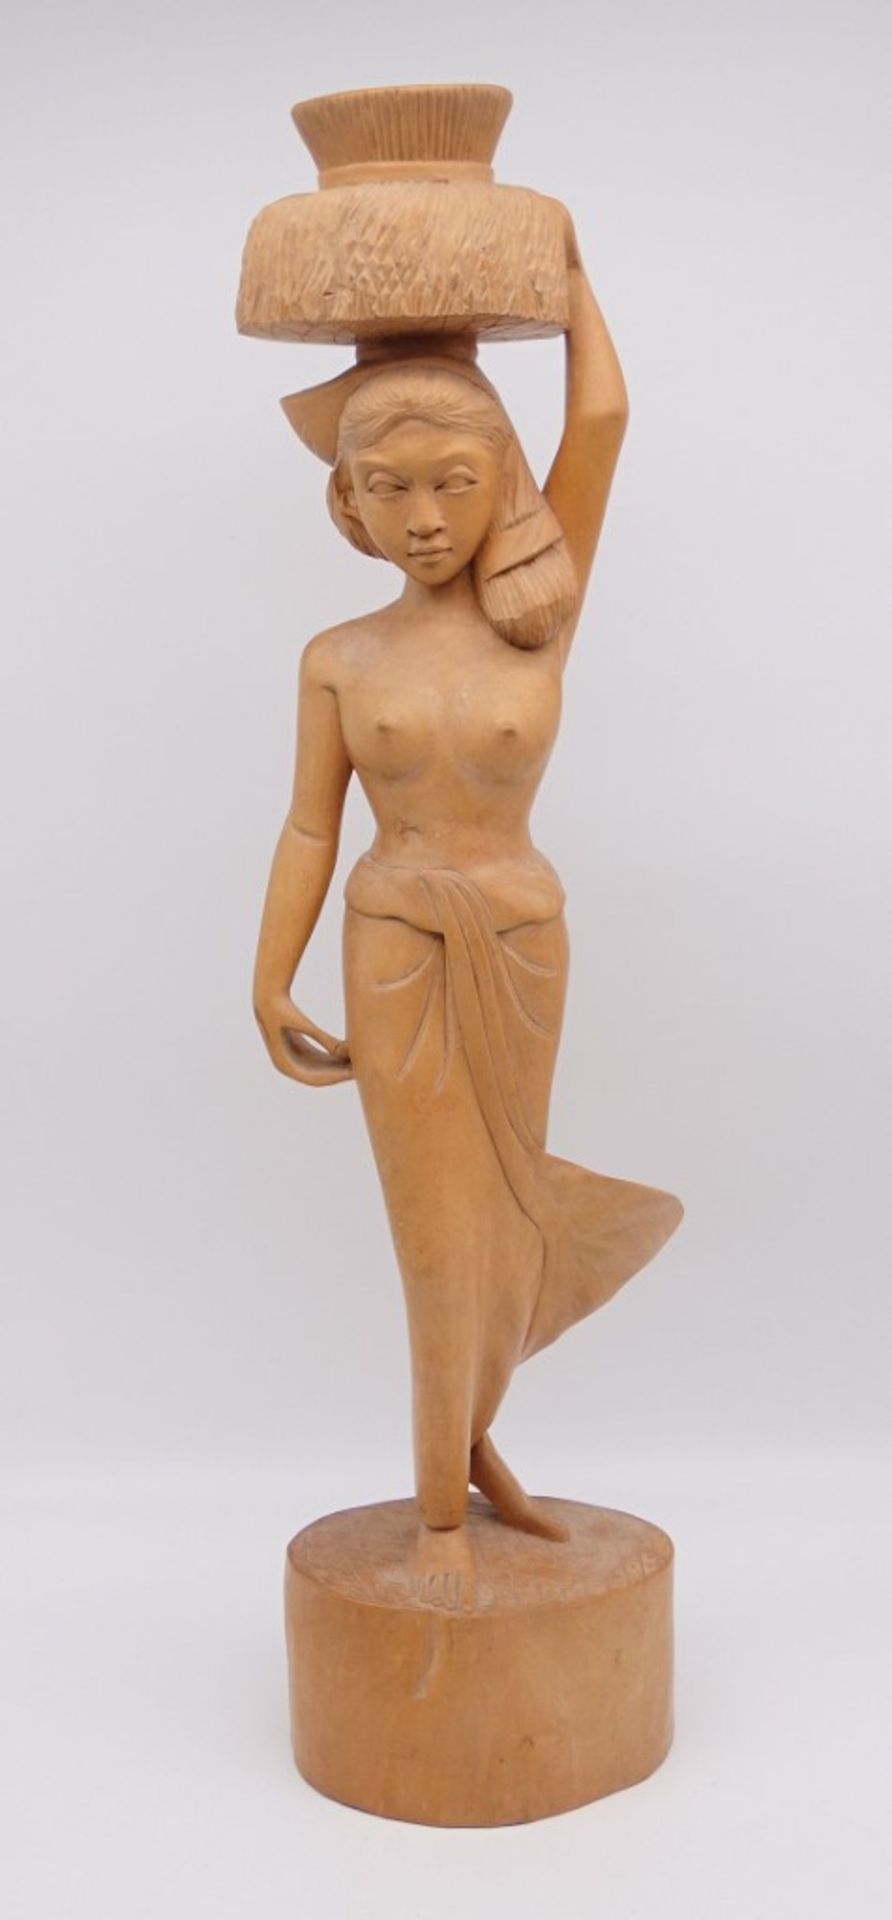 Frauenskulptur aus Holz, H. 61 cm, leicht reinigungsbedürftig - Bild 3 aus 6